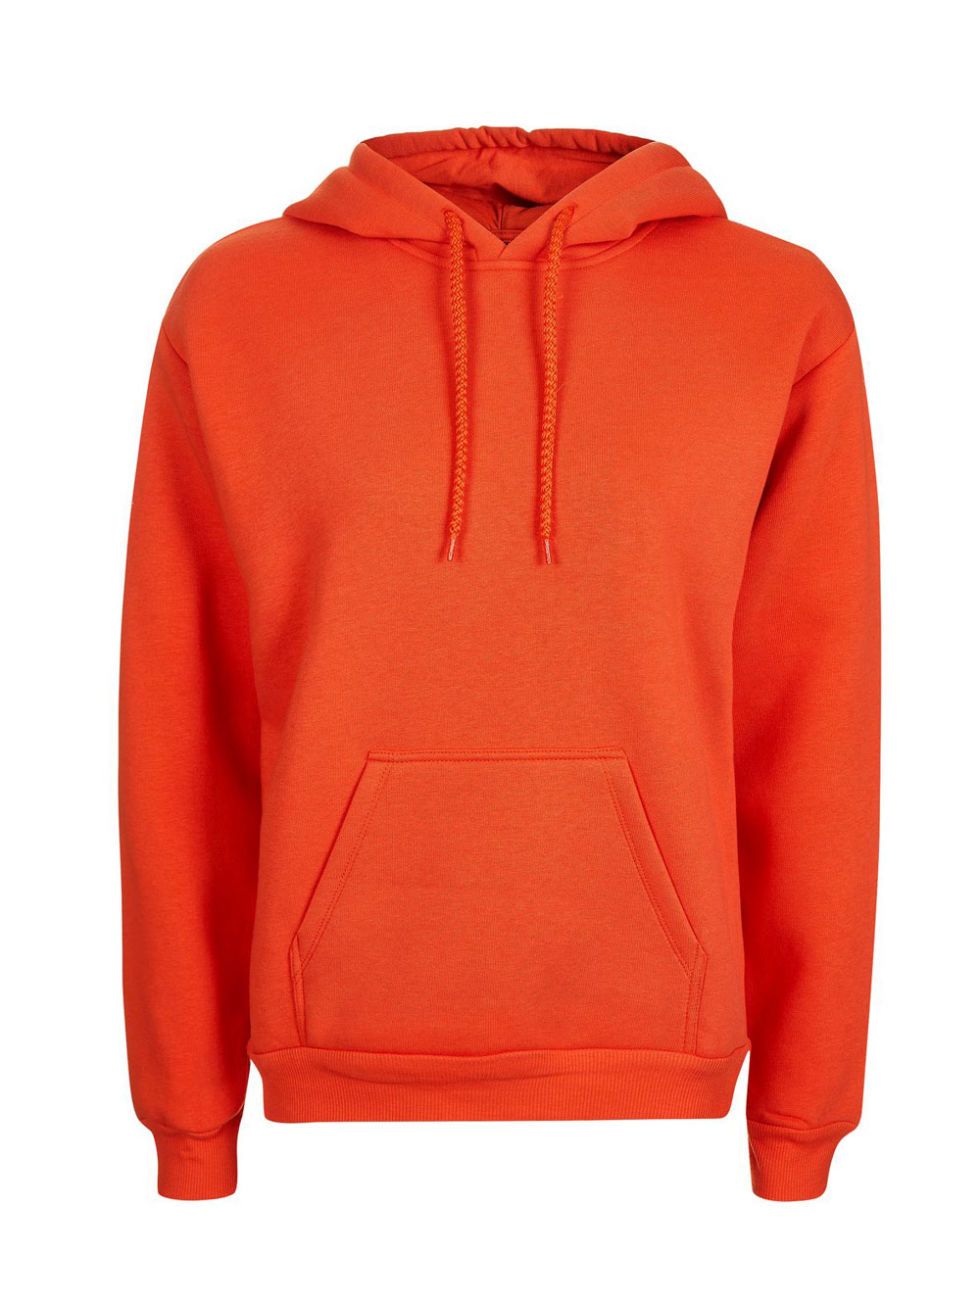 Clothing, Product, Sleeve, Jacket, Red, Textile, Outerwear, Orange, White, Sweatshirt, 